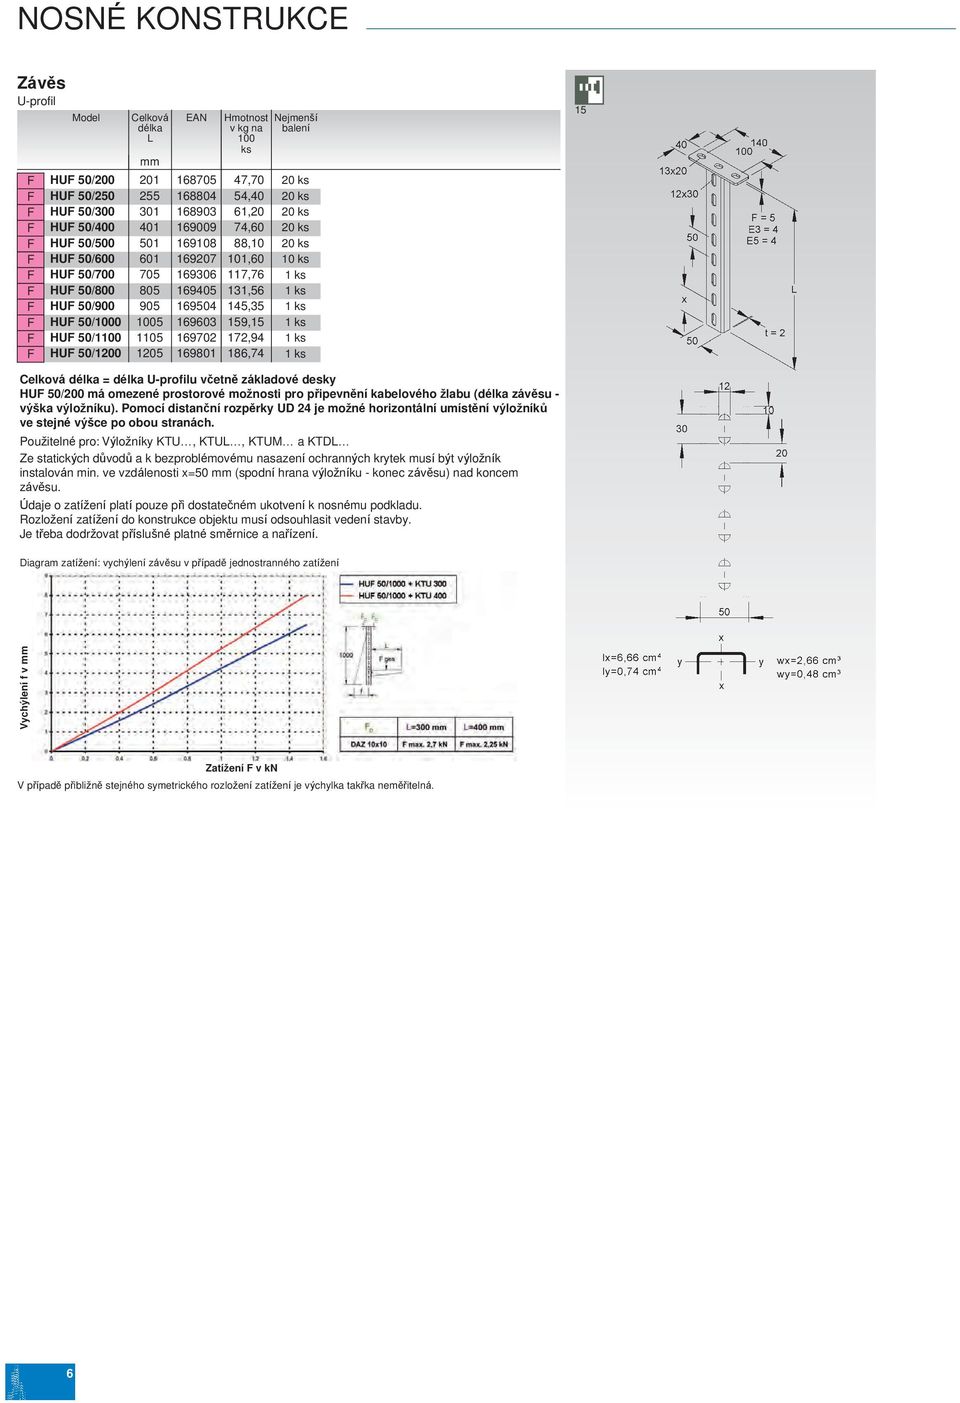 délka U-profilu včetně základové desky U 50/200 á oezené prostorové ožnosti pro připevnění kabelového žlabu (délka závěsu - výška výložníku).